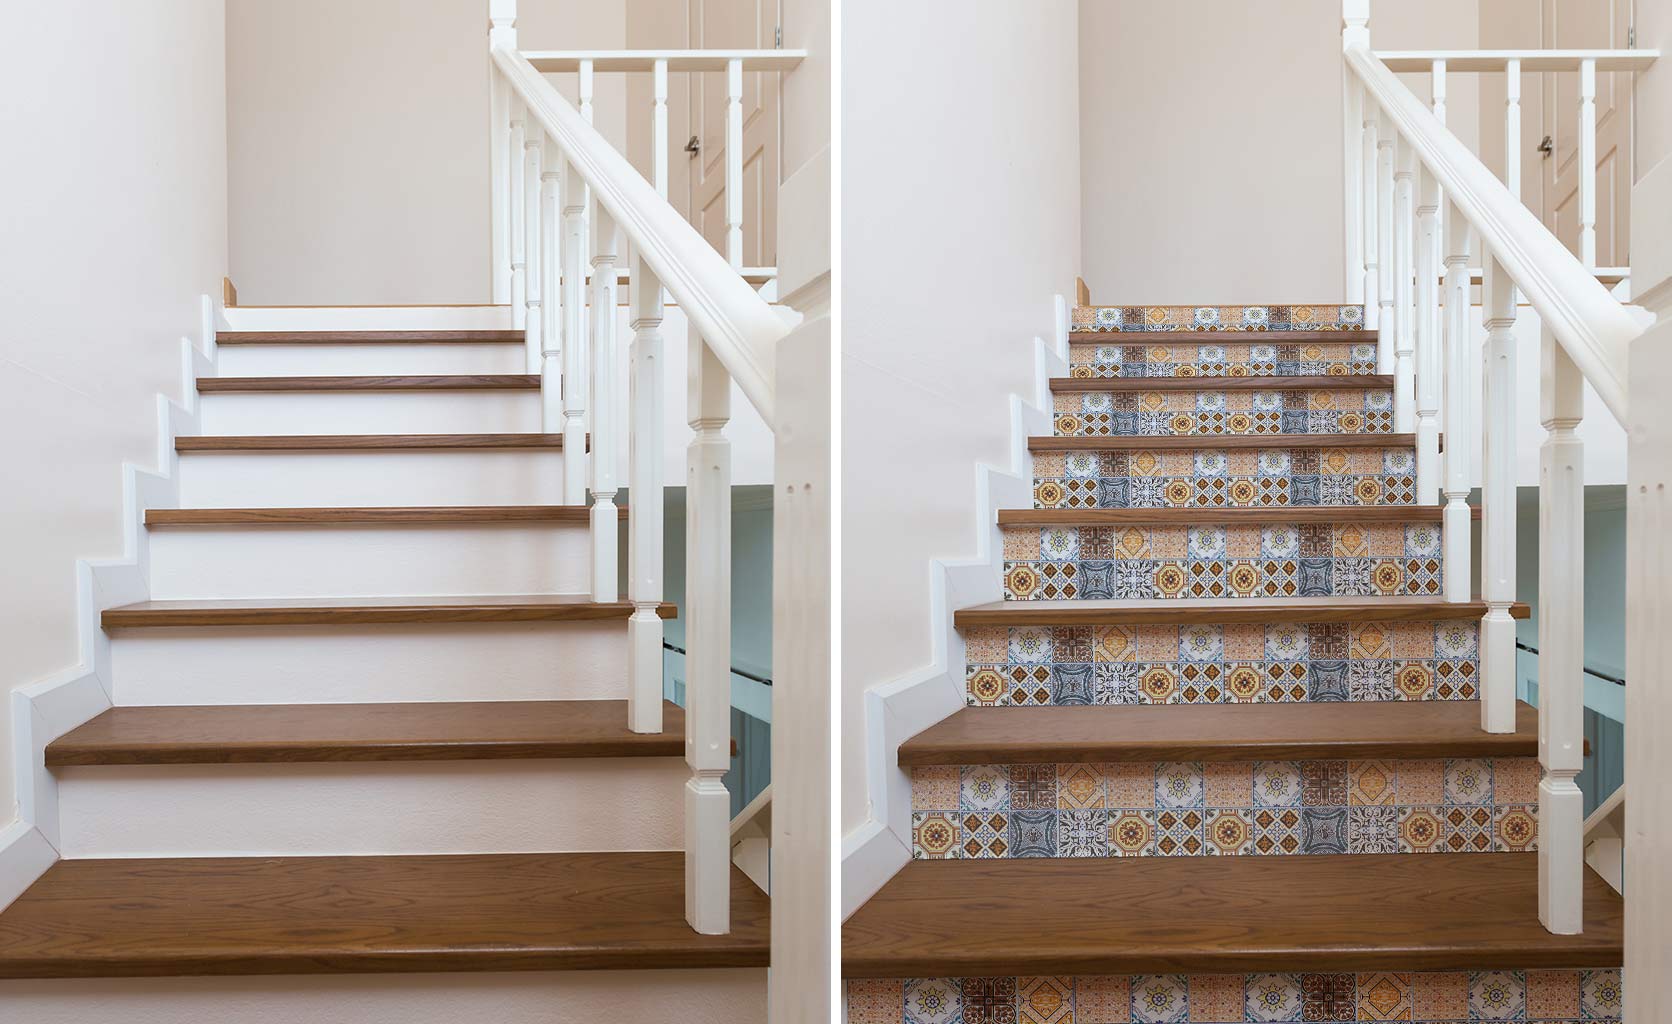 Consigue escaleras nuevas con los vinilos decorativos